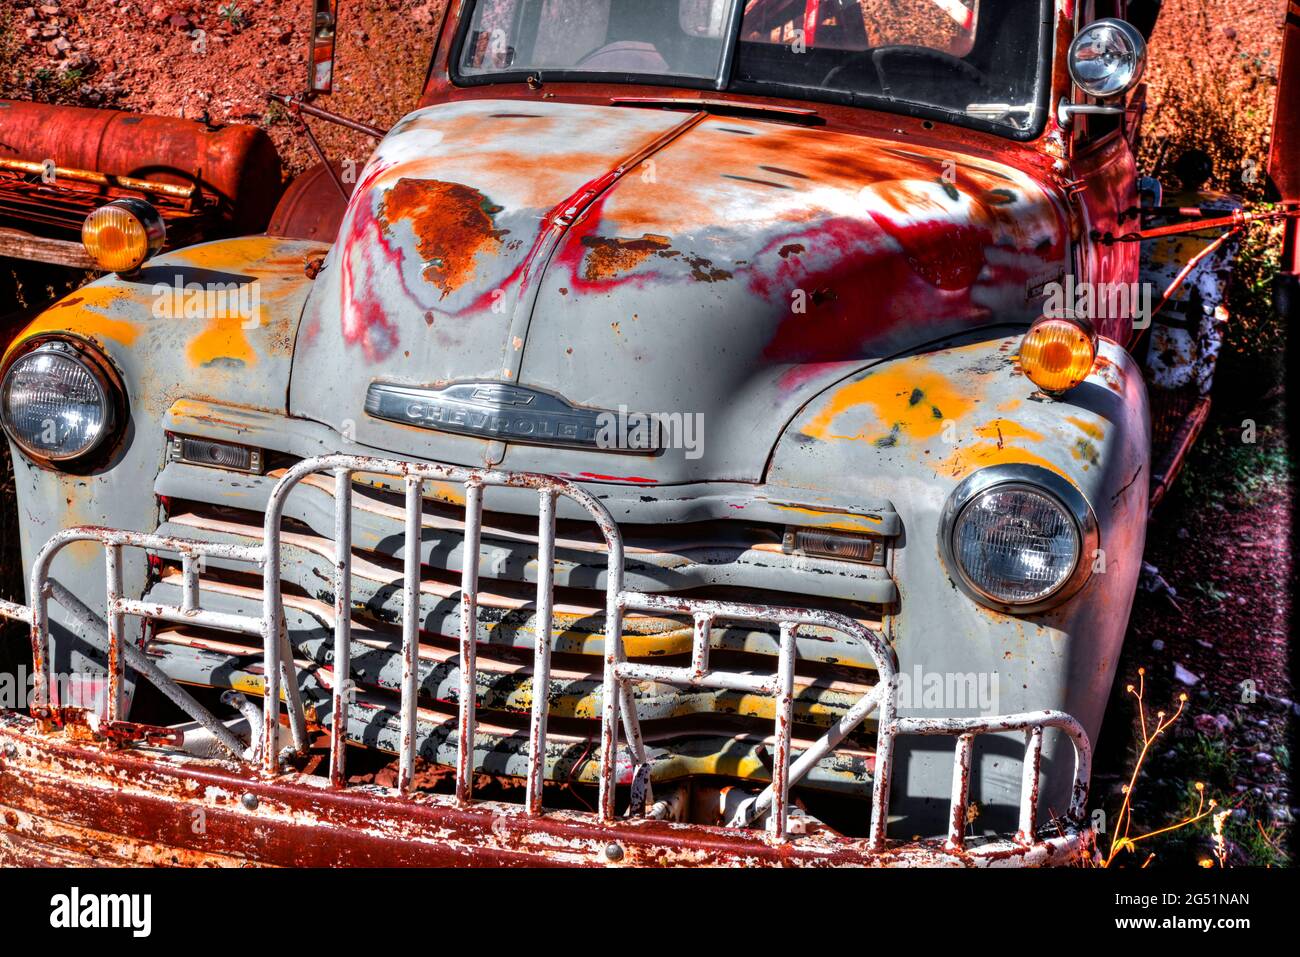 Rusty truck at junkyard, Jerome, Arizona, USA Stock Photo